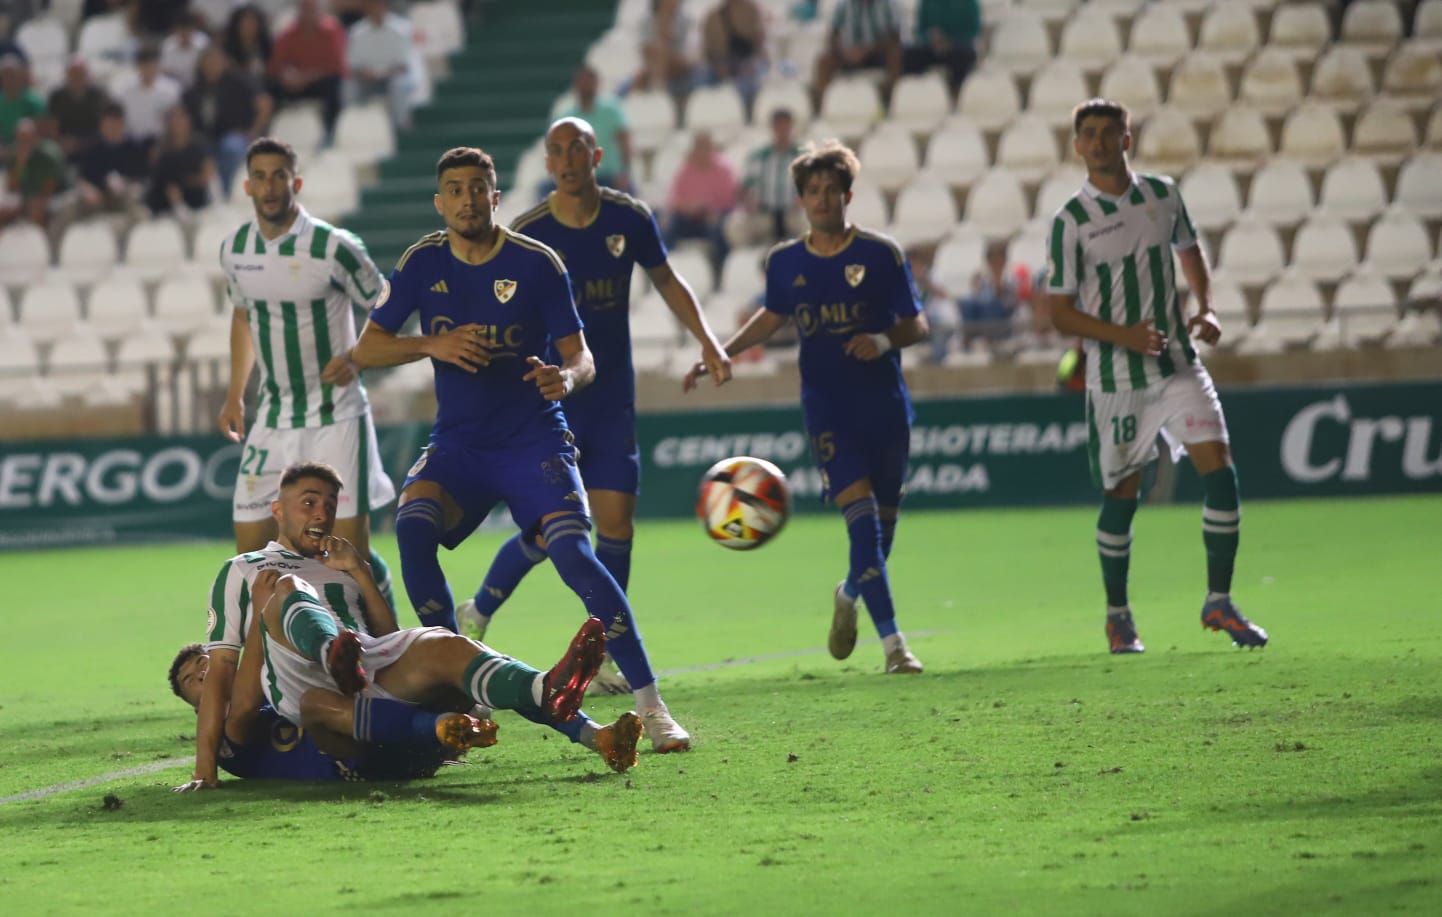 Córdoba CF – Linares Deportivo : las imágenes del partido en El Arcángel